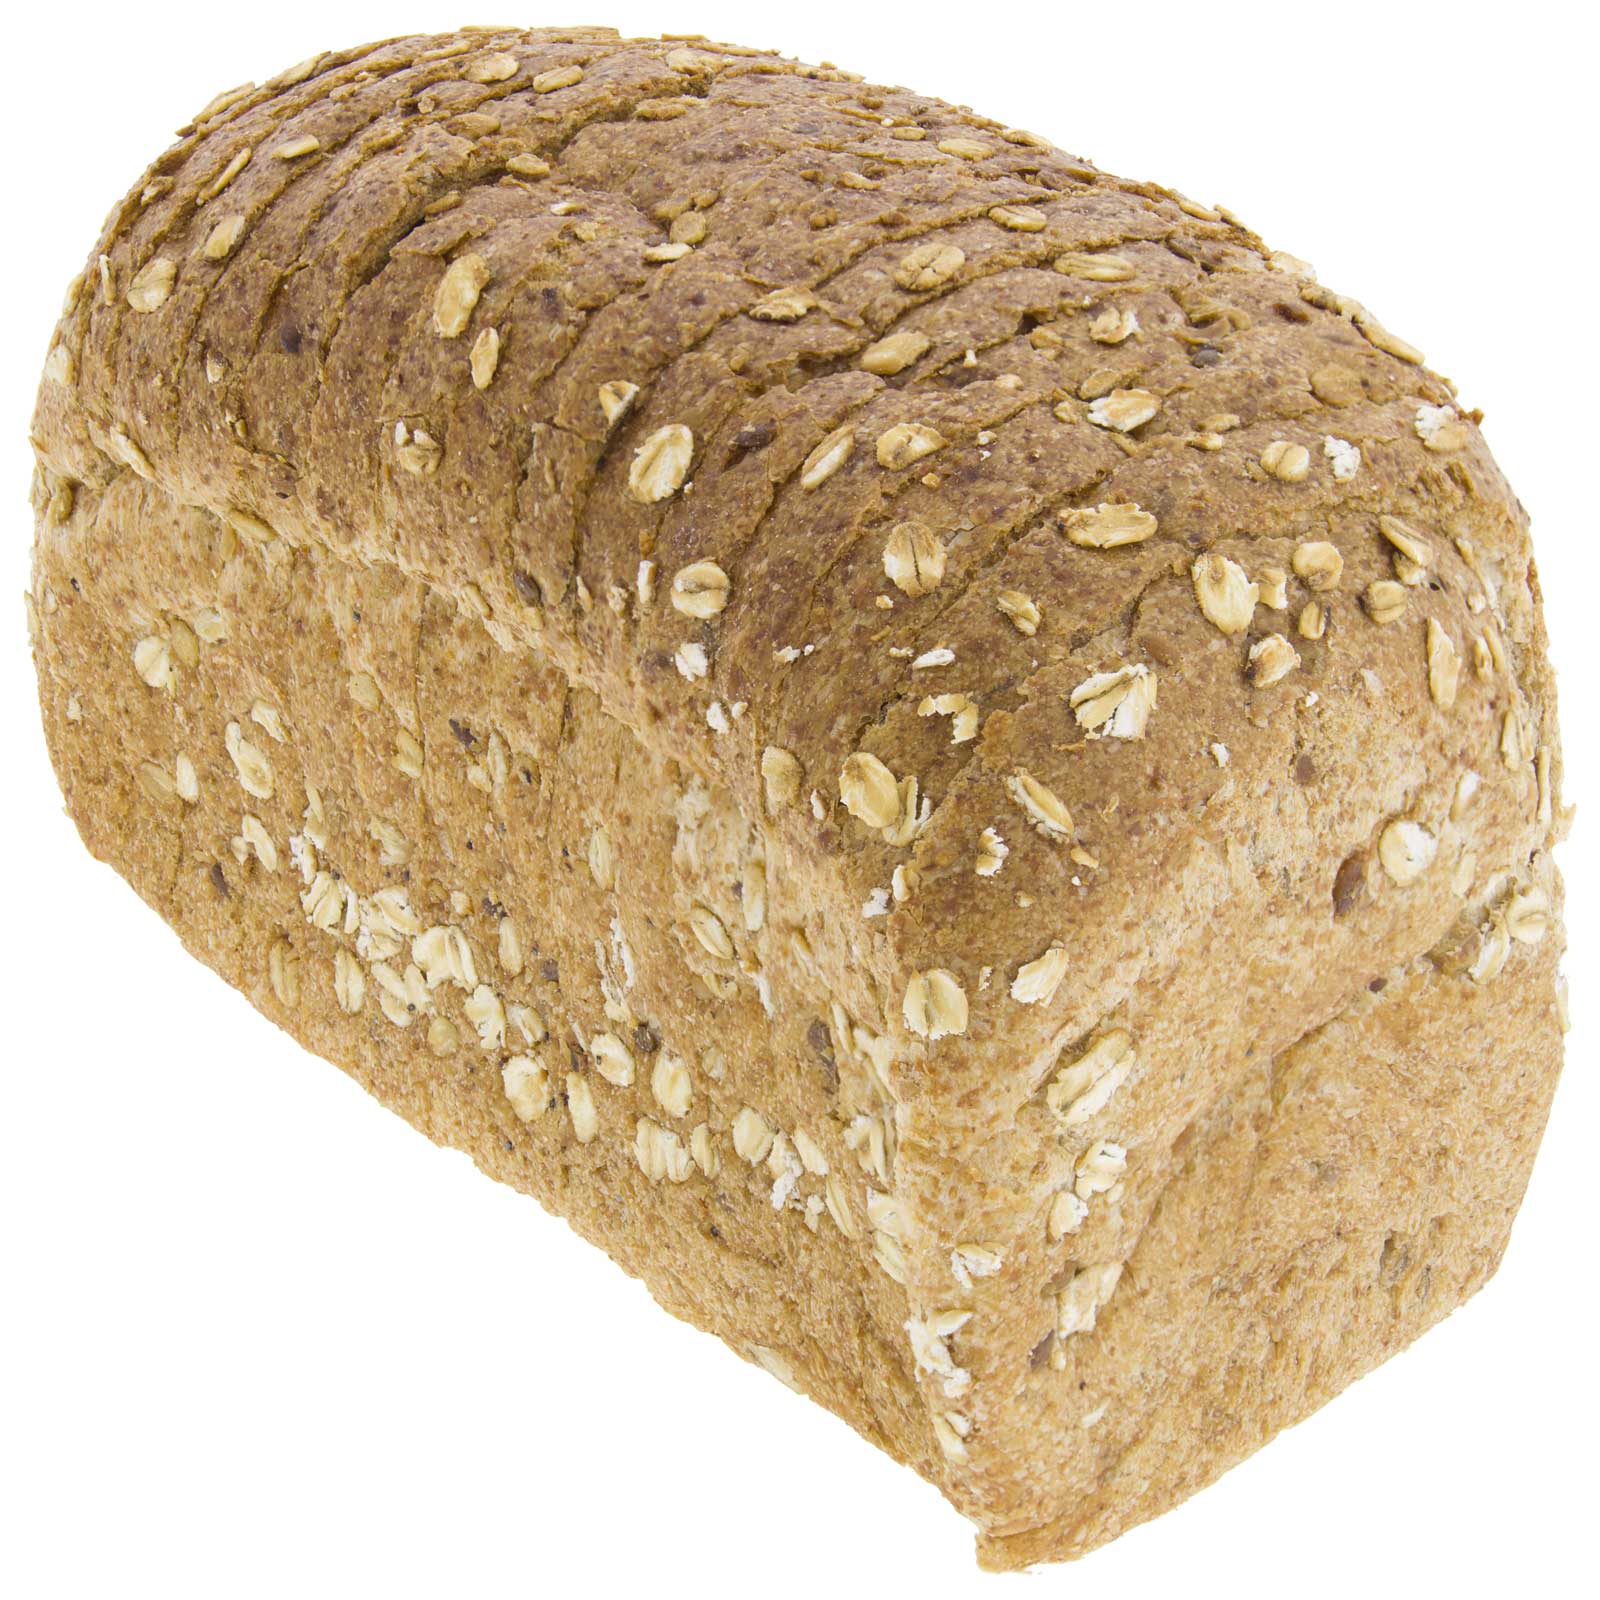 450 G moule à pain artisanal écologique à grain entier